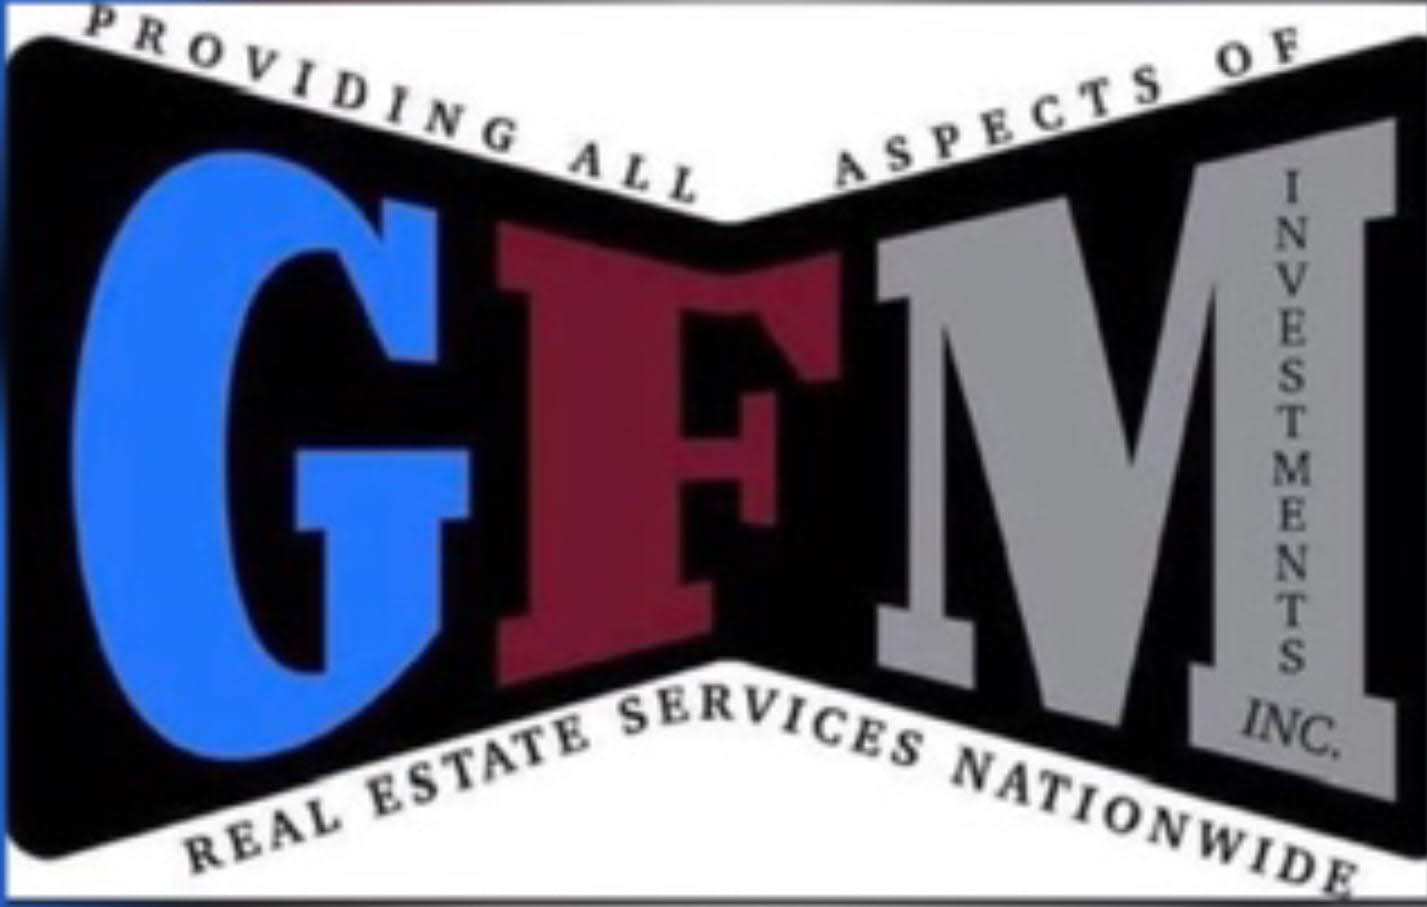 GFM Investments, Inc